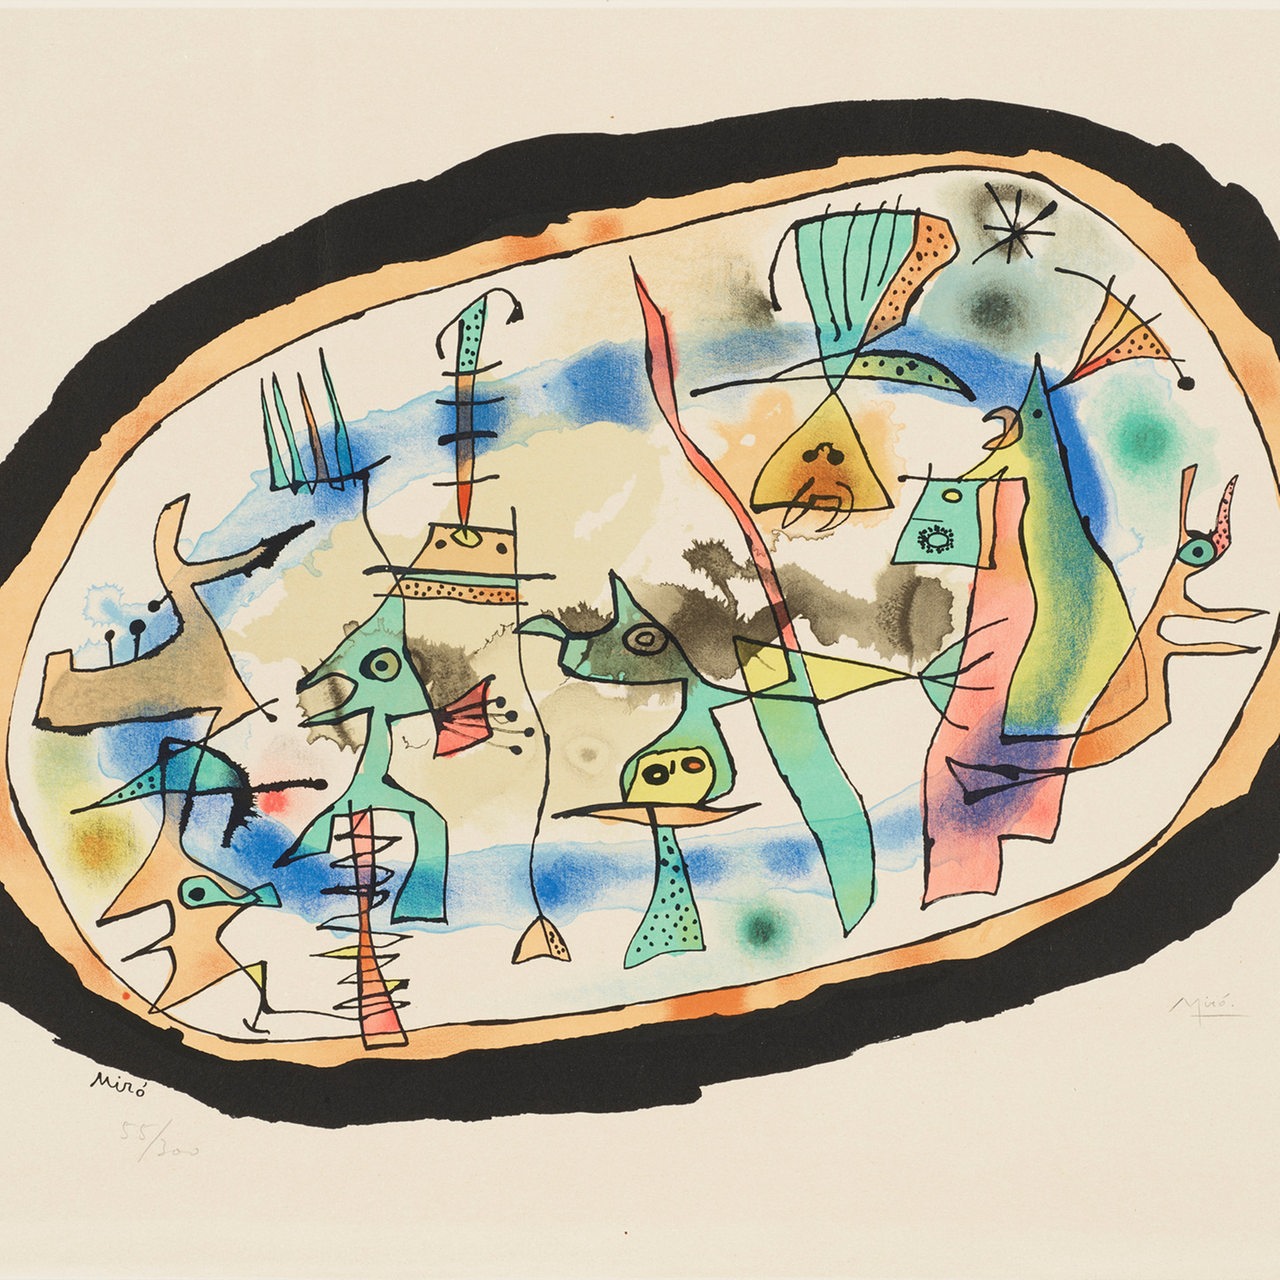 Farblithografie von Joan Miró mit geografischen Formen